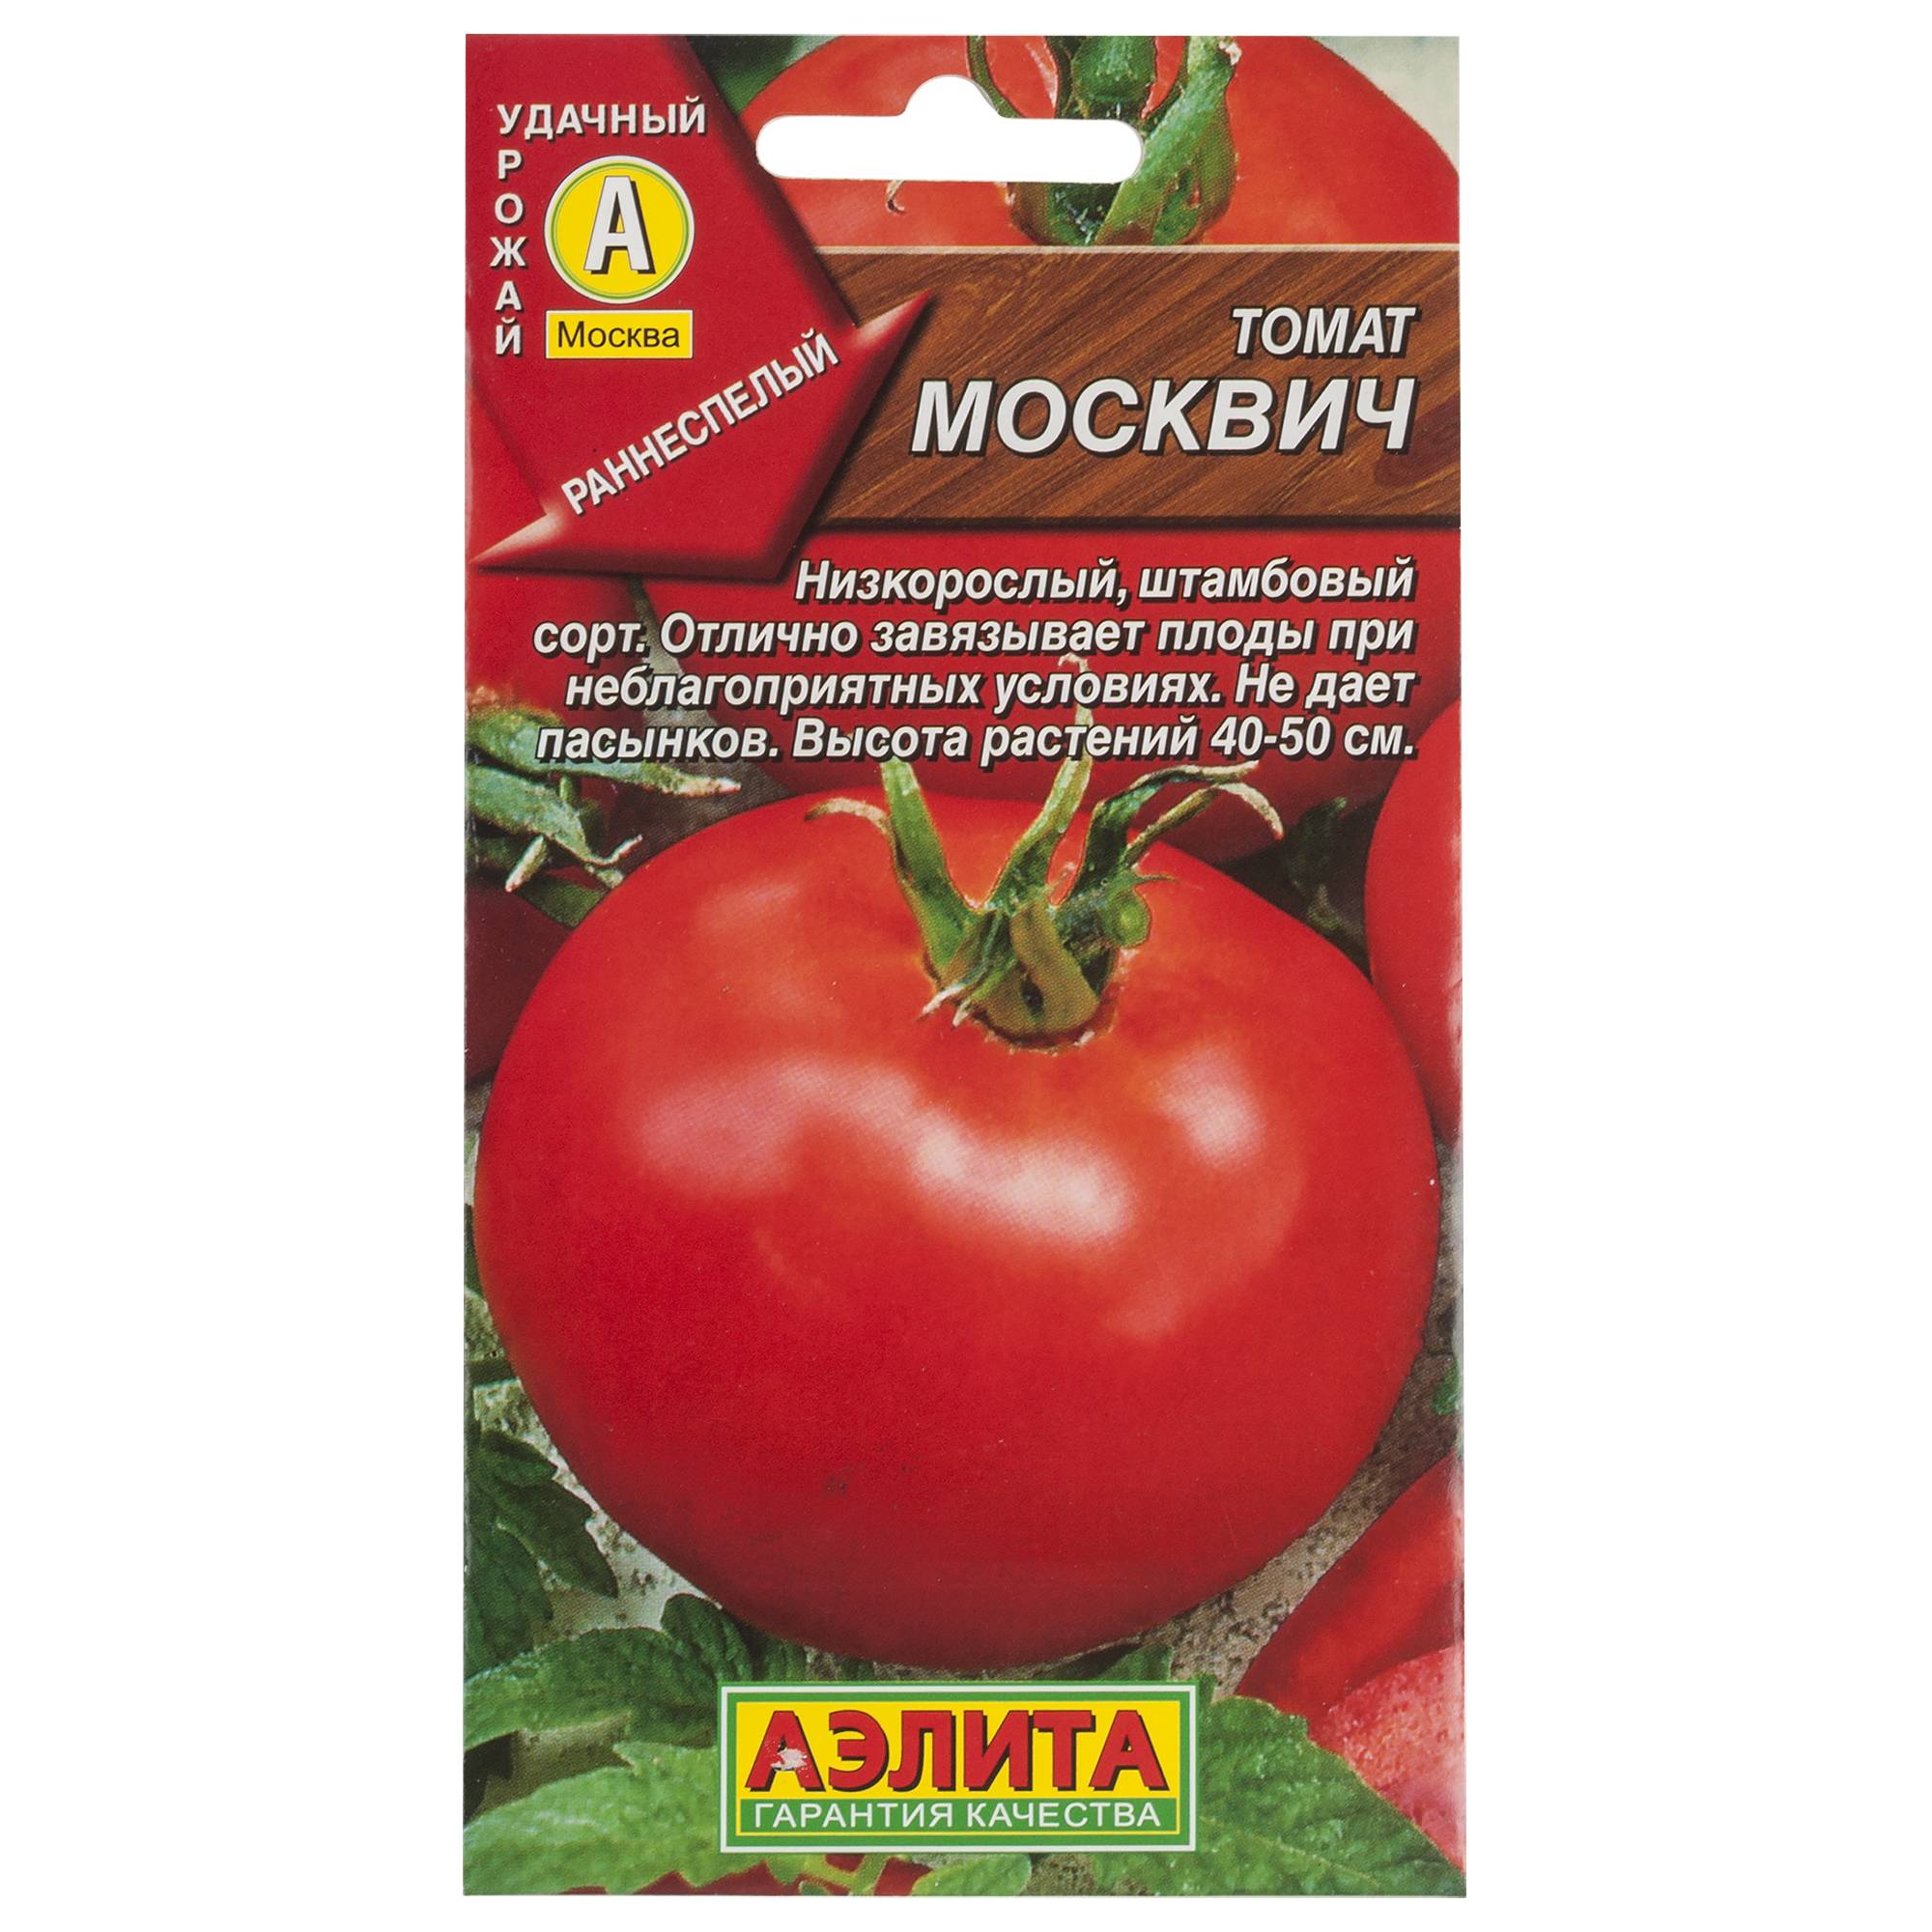 Томат "москвичка": характеристика и описание сорта помидор с фото, отзывы об урожайности